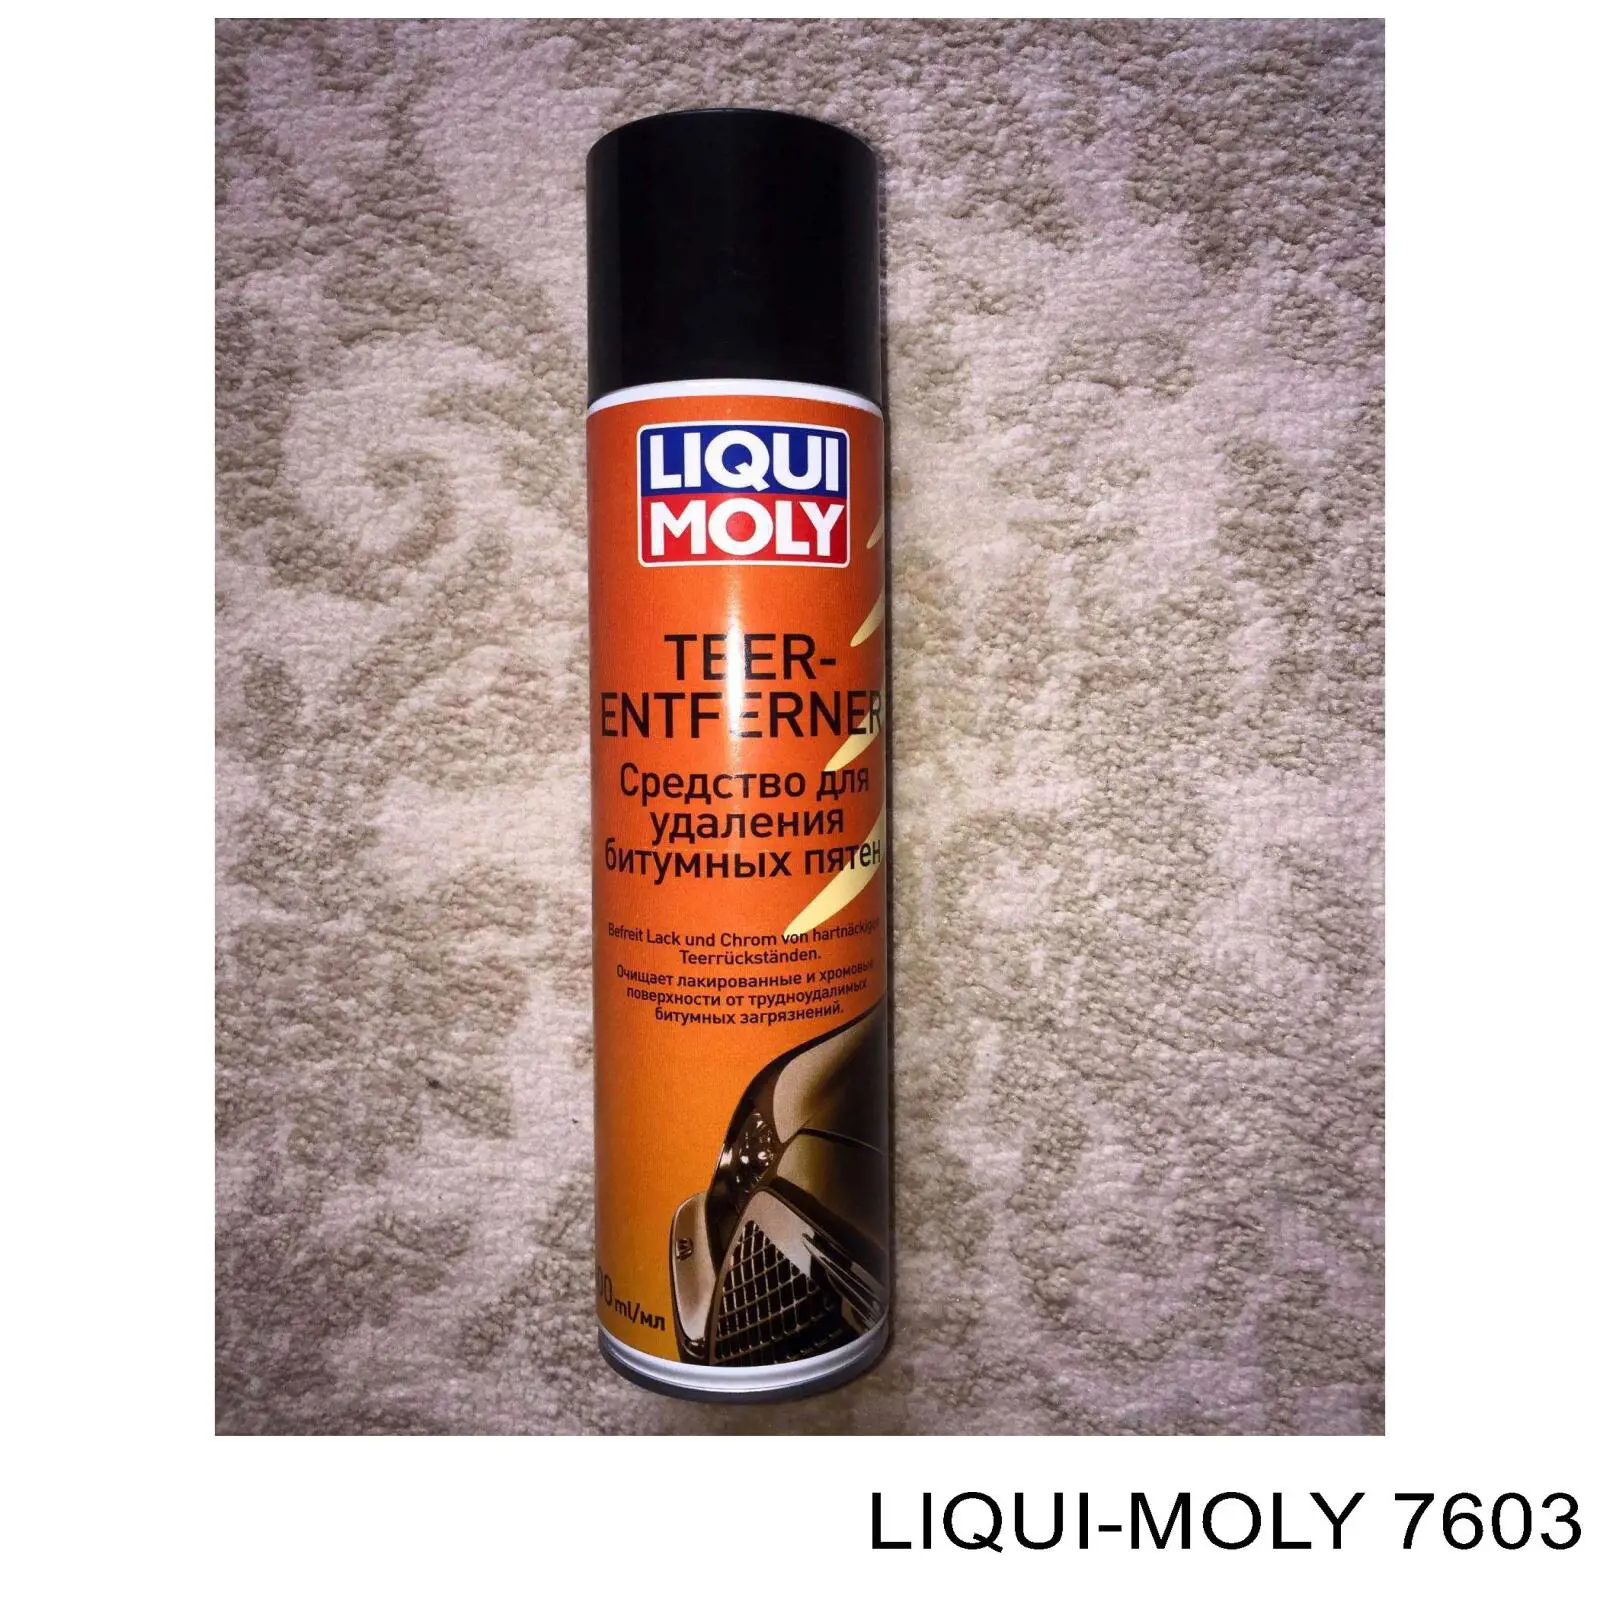 Очиститель кузова Liqui Moly 7603